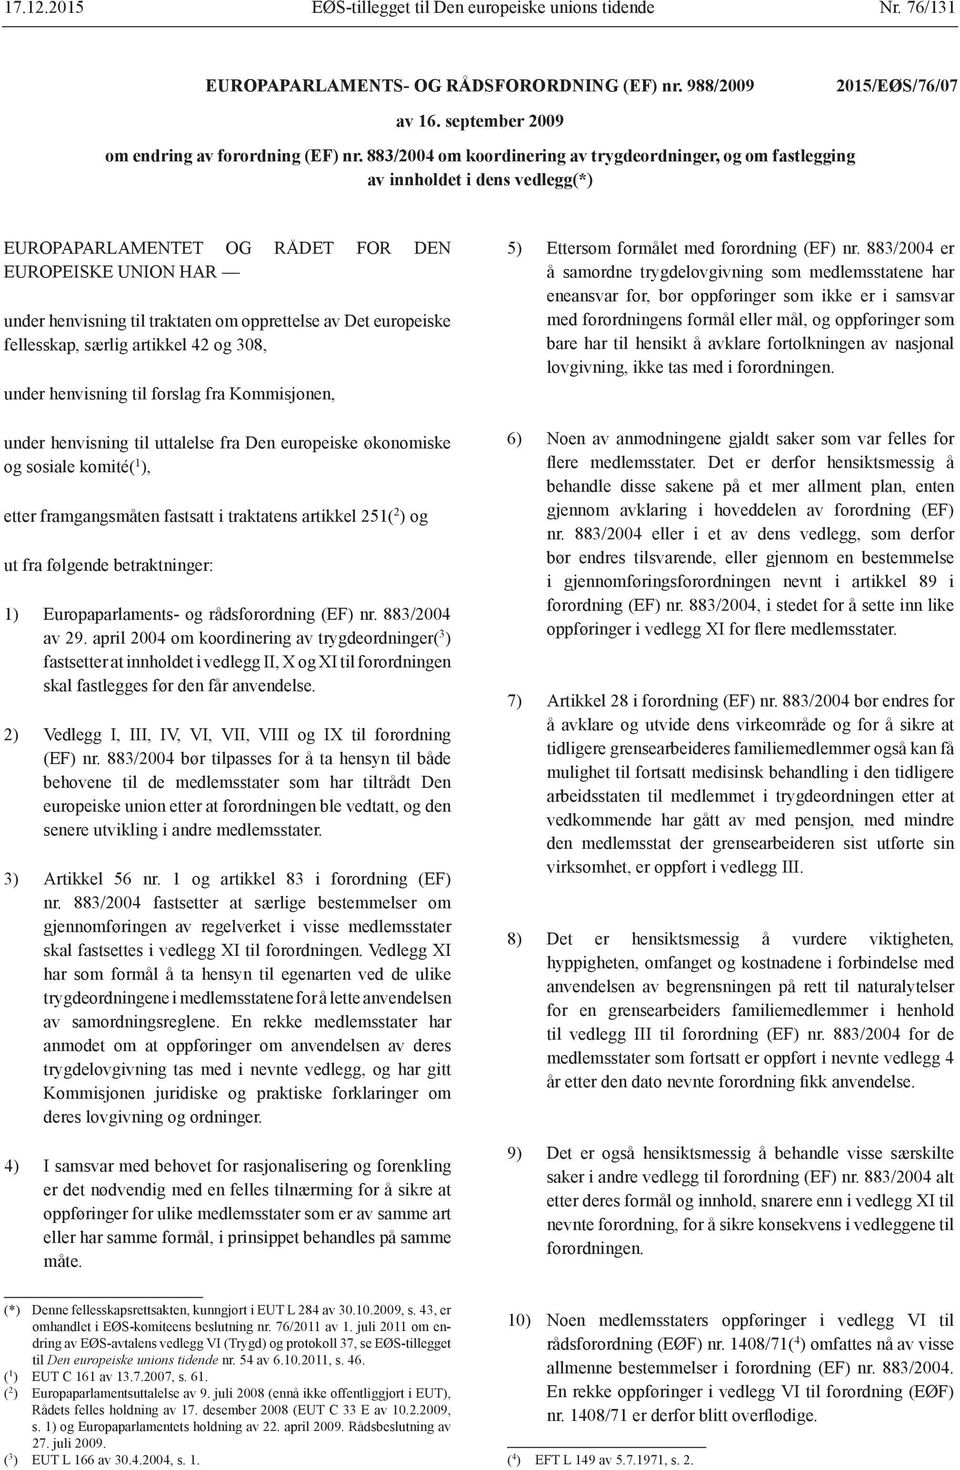 Det europeiske fellesskap, særlig artikkel 42 og 308, under henvisning til forslag fra Kommisjonen, under henvisning til uttalelse fra Den europeiske økonomiske og sosiale komité( 1 ), etter